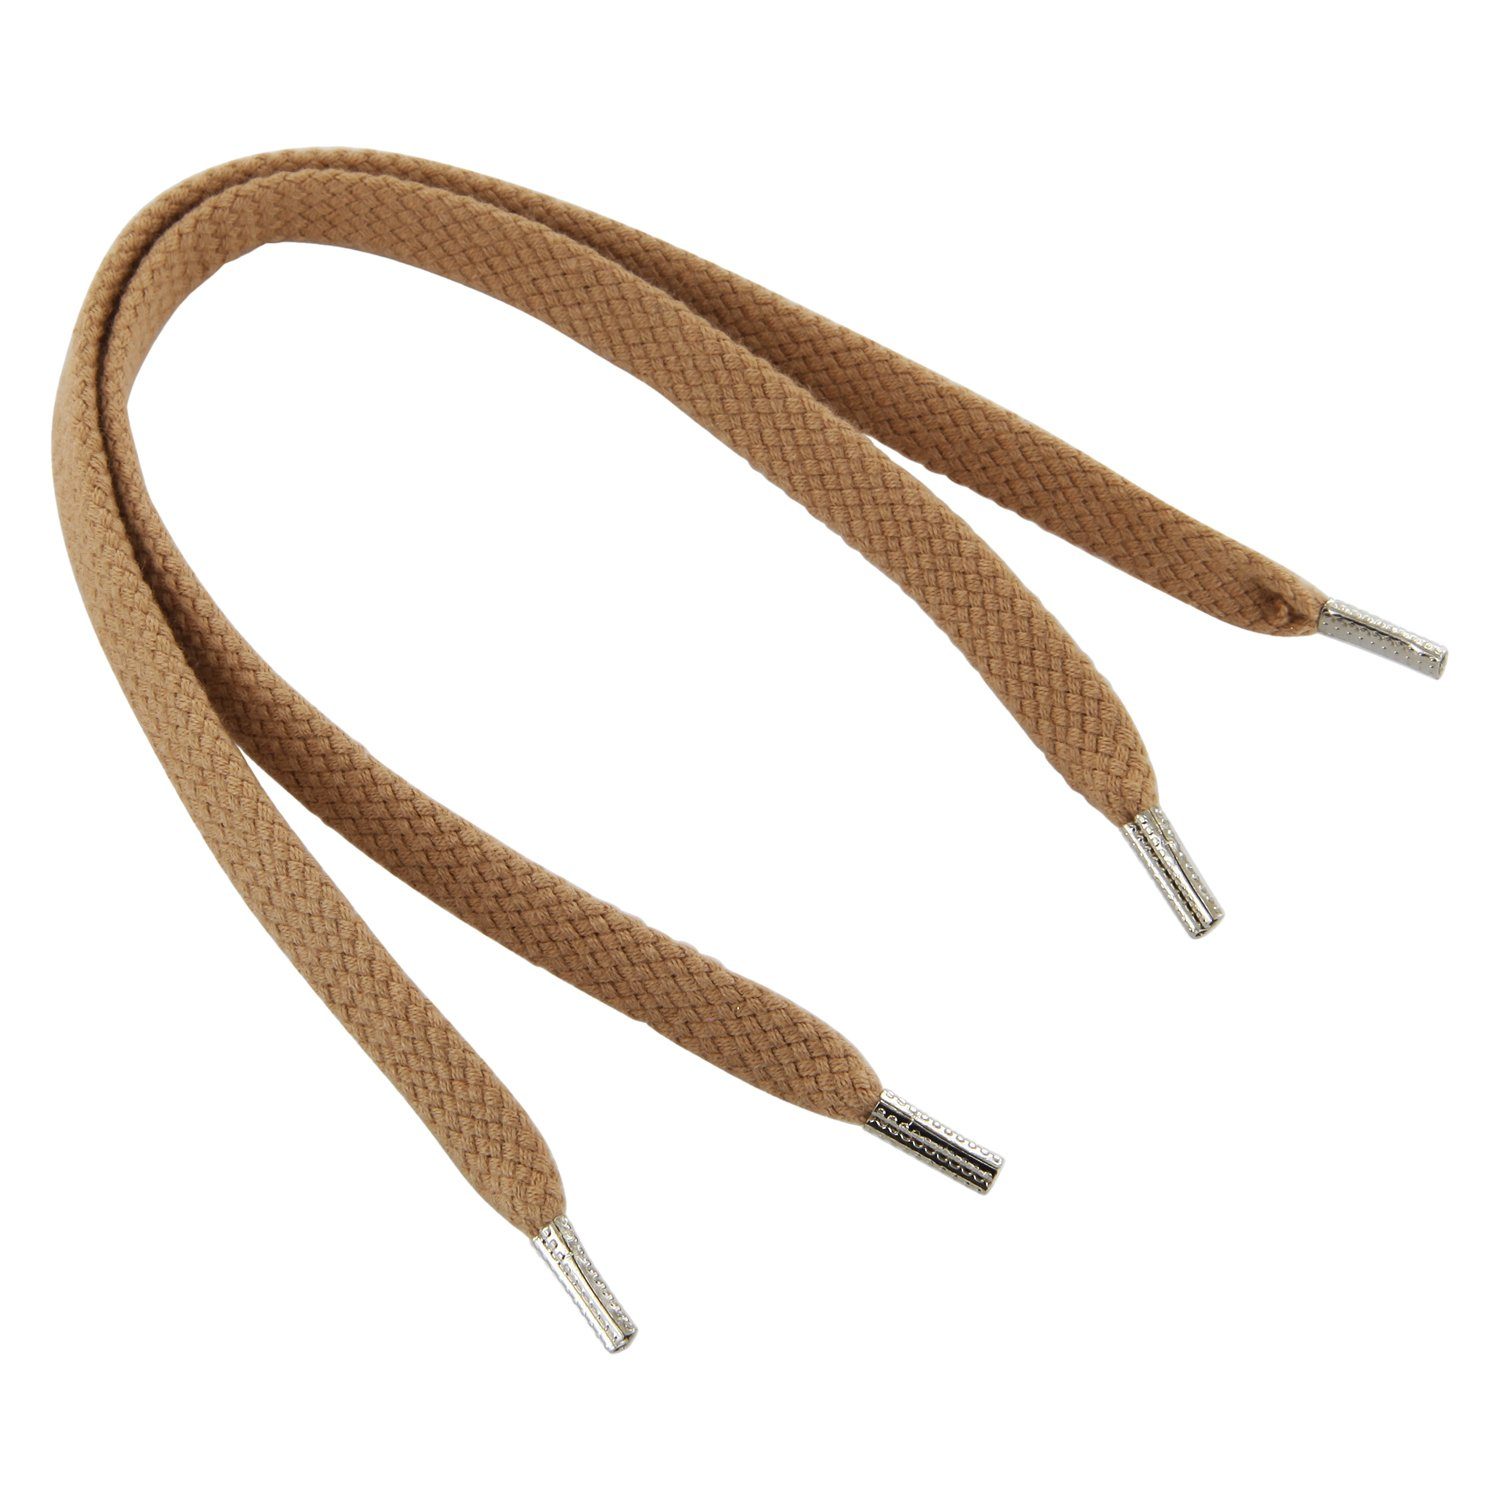 Rema Schnürsenkel Rema Schnürsenkel Camel - flach - ca. 6-7 mm breit für Sie nach Wunschlänge geschnitten und mit Metallenden versehen